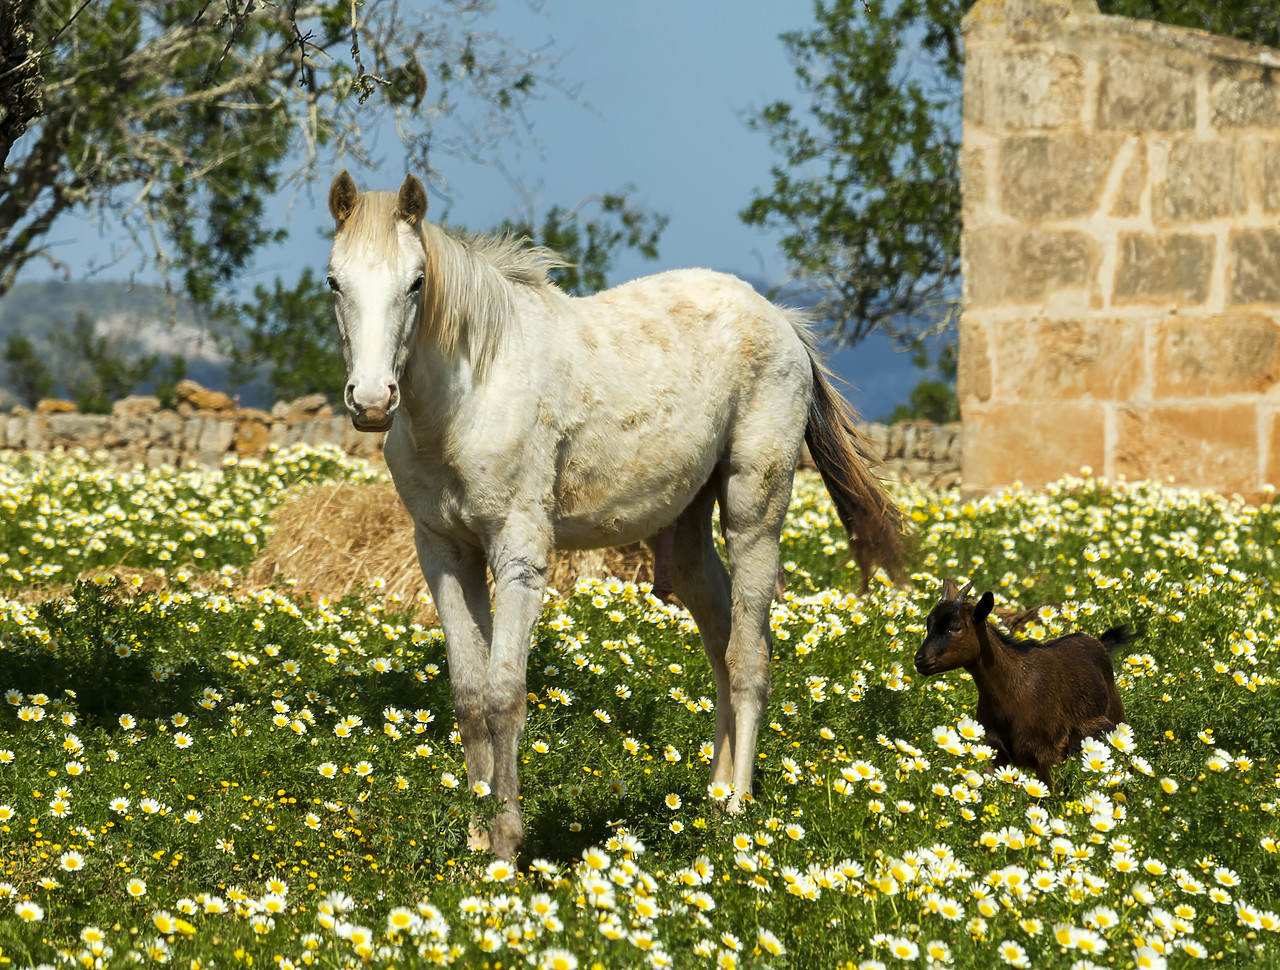 #180151-1 - Horse & Goat in Field of Wildflowers, Mallorca, Balearics, Spain